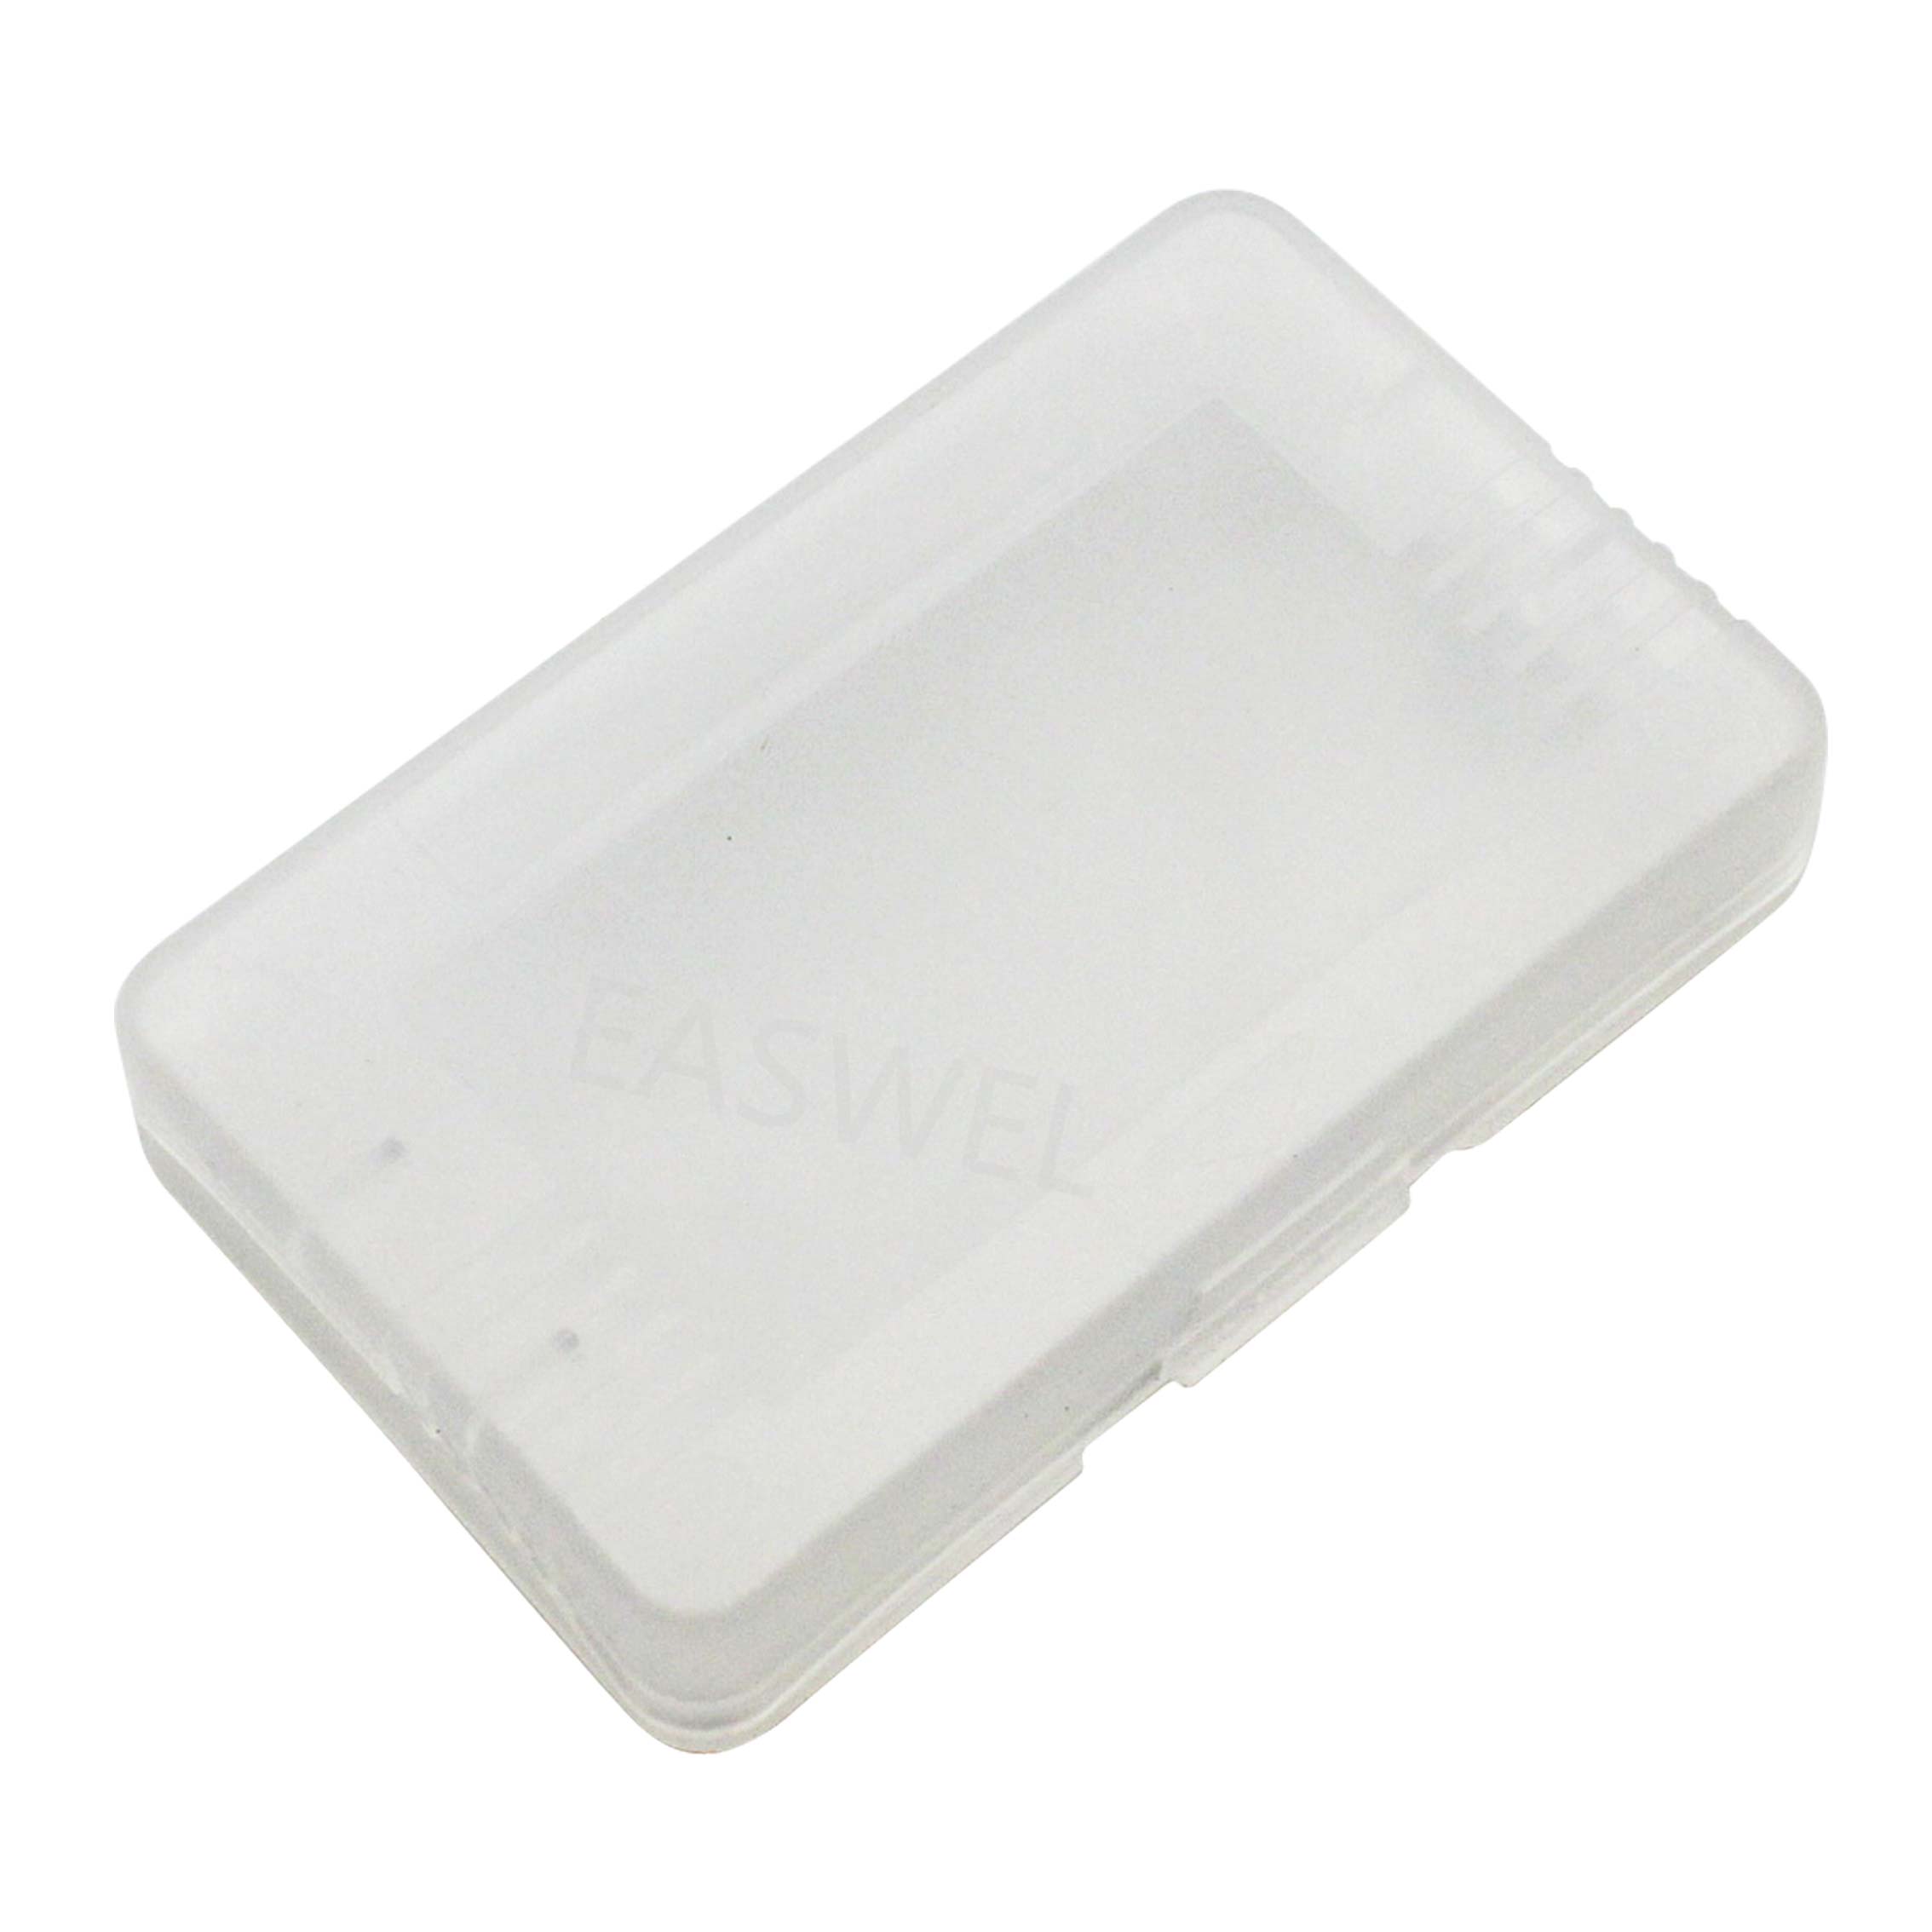 Plastic Game Cartridge Gevallen Voor Nintendo GBA Gameboy Advance Sp & GBM